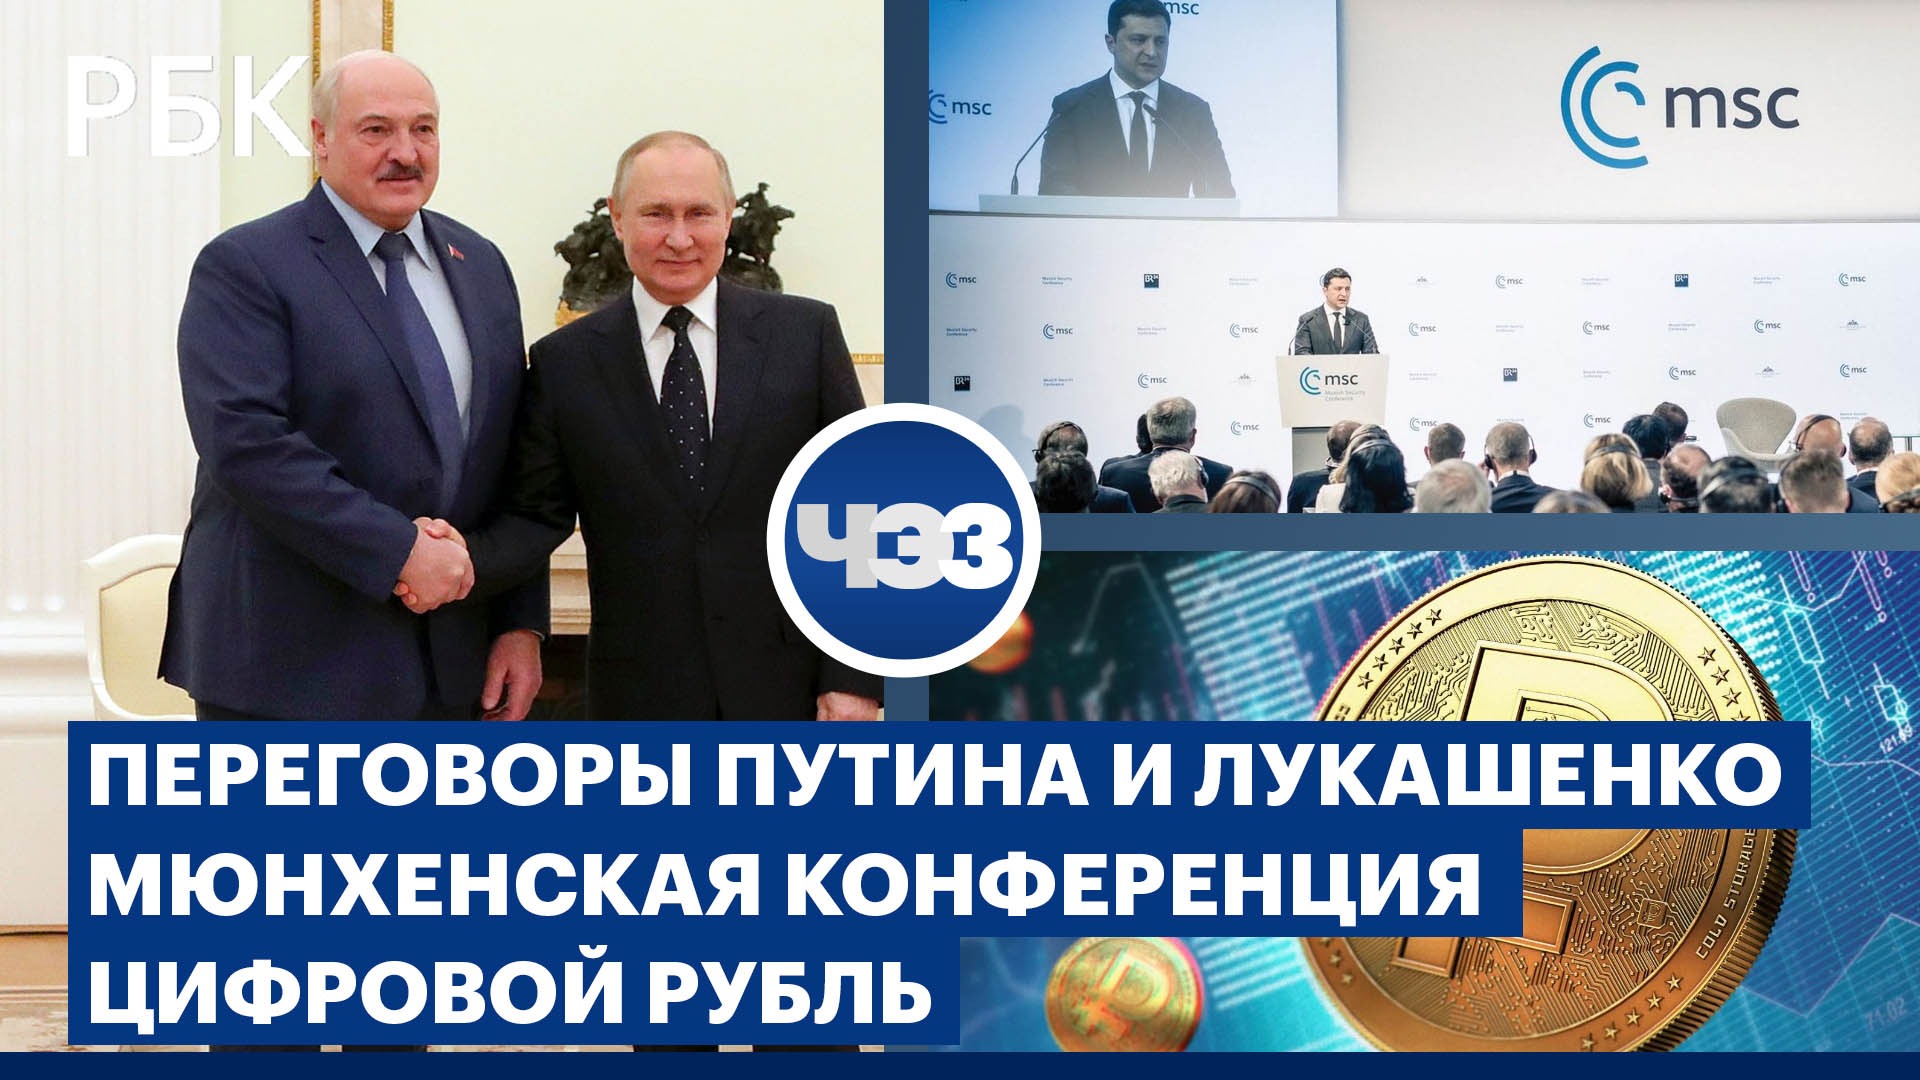 Встреча Путина и Лукашенко. Цифровой рубль уже в апреле. Мюнхенская конференция